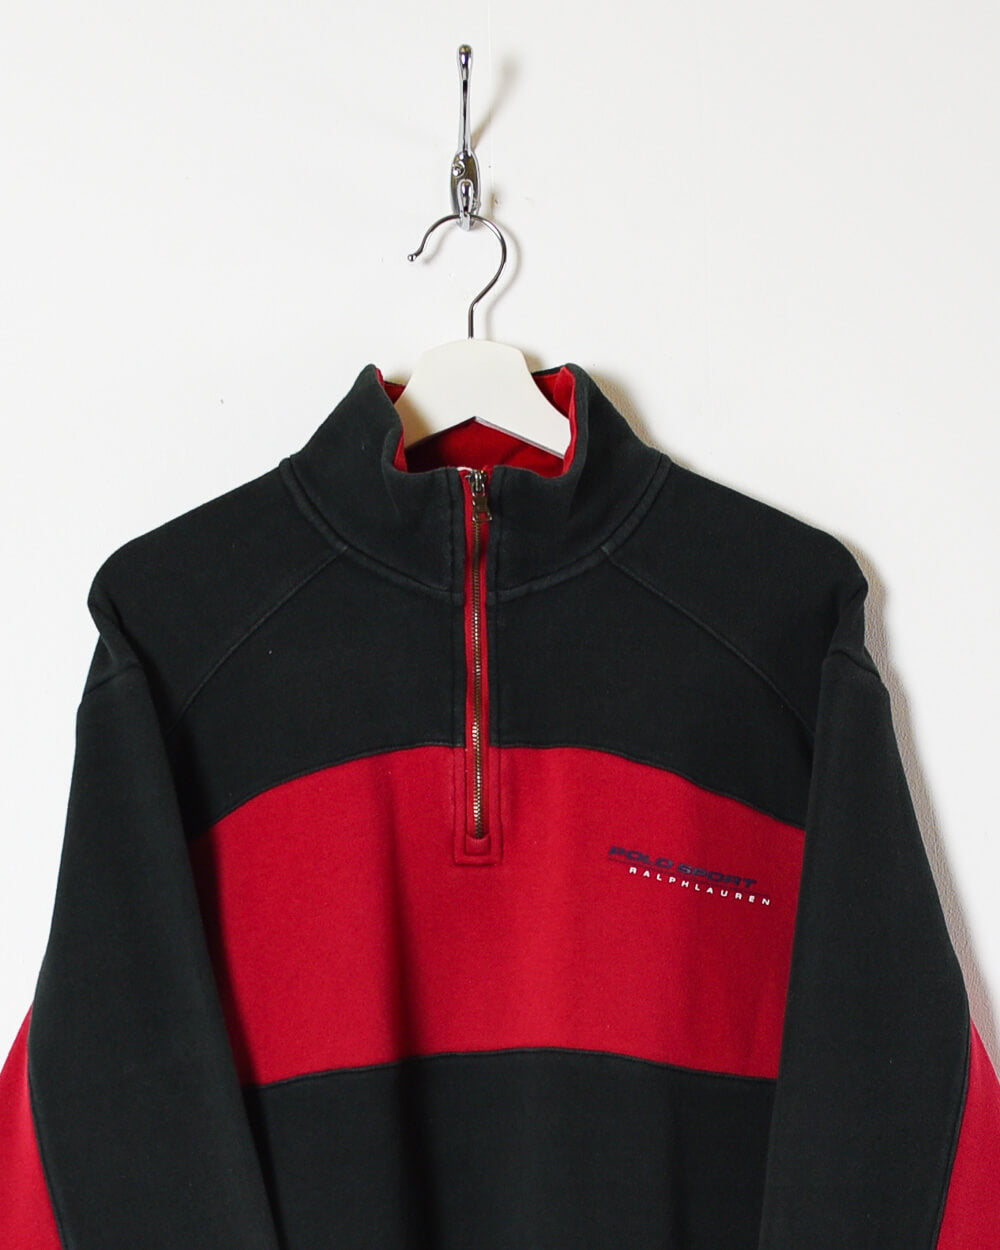 Black Ralph Lauren Polo Sport 1/4 Zip Sweatshirt - Large